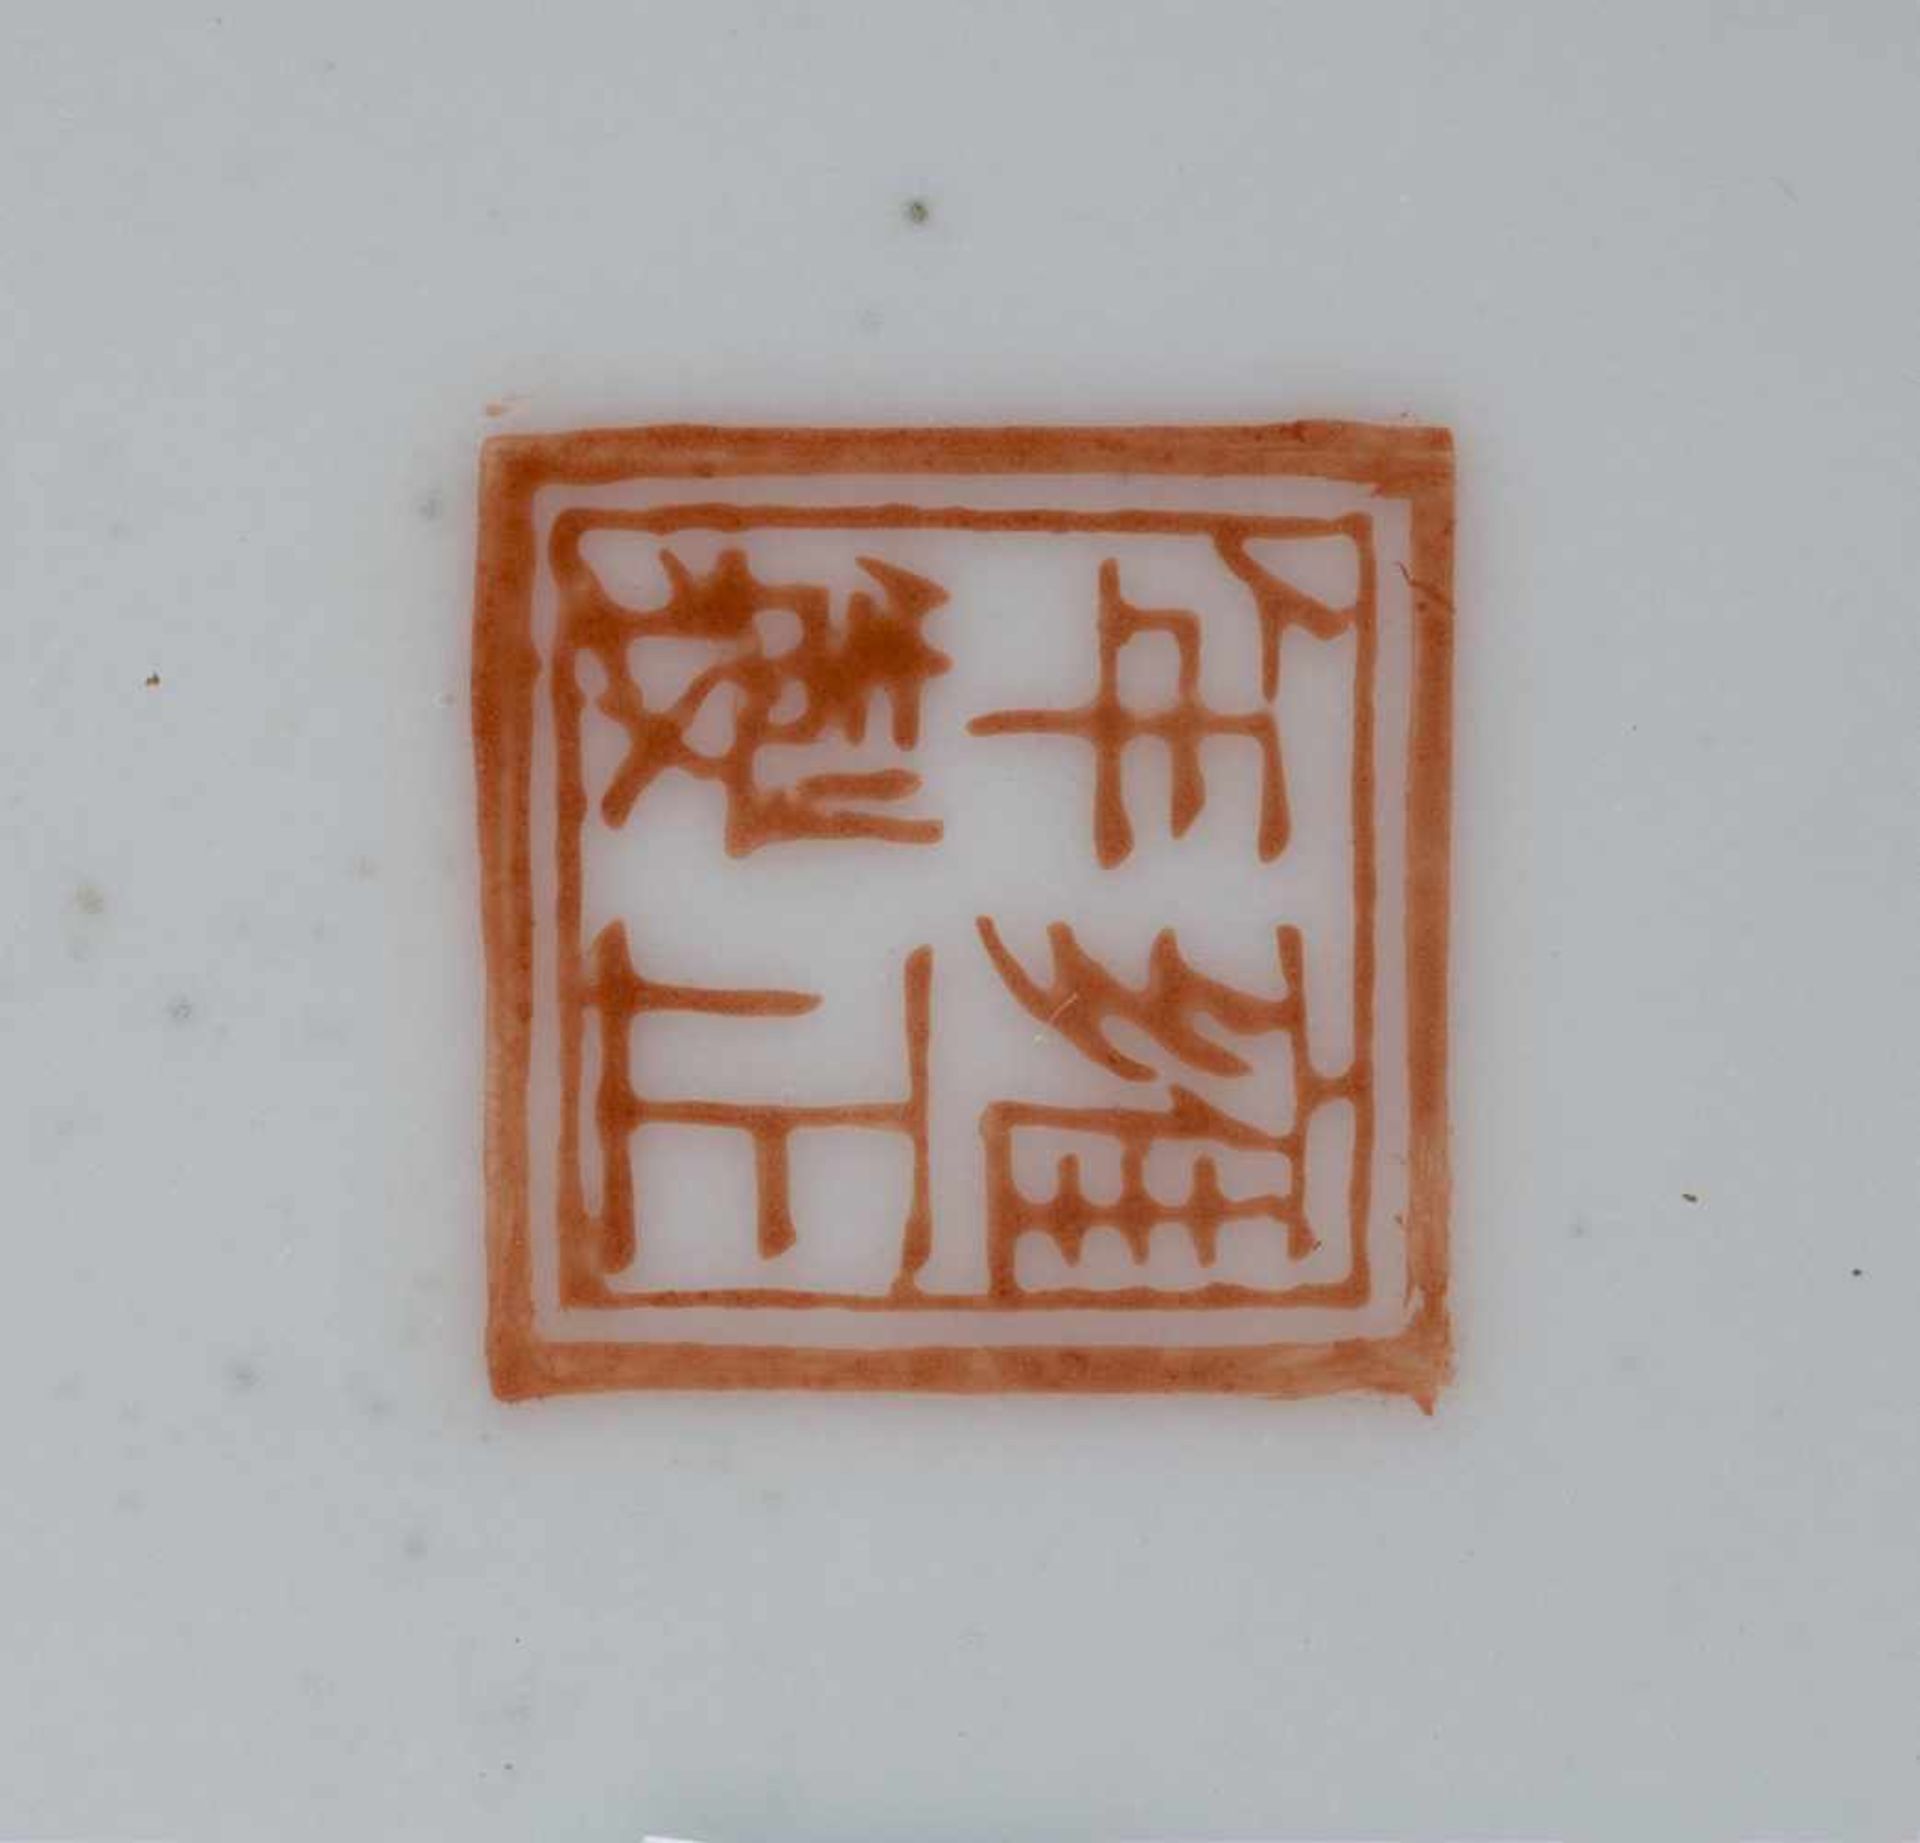 VASE MIT DRACHENDEKOR China, 20. Jh. Porzellan, polychrome Aufglasurbemalung. H. 33,4 cm. Im Boden - Bild 2 aus 2